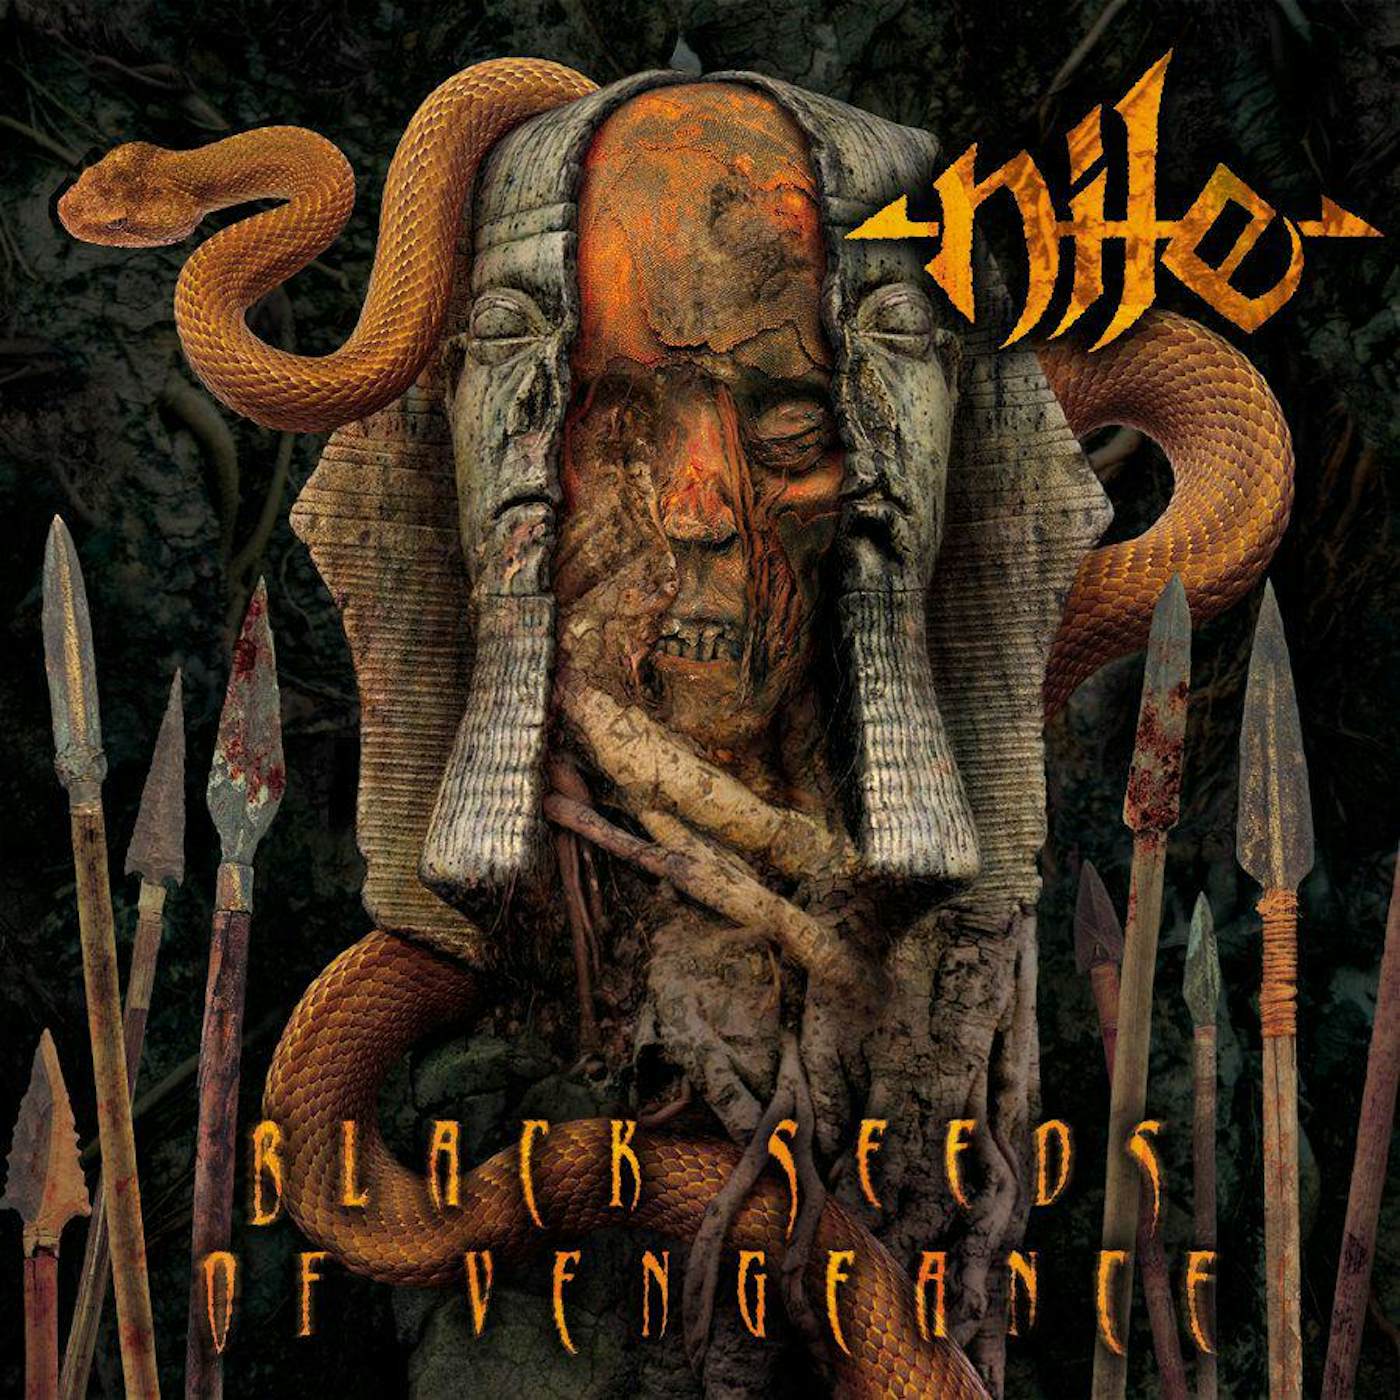 Nile Black Seeds of Vengence Vinyl Record